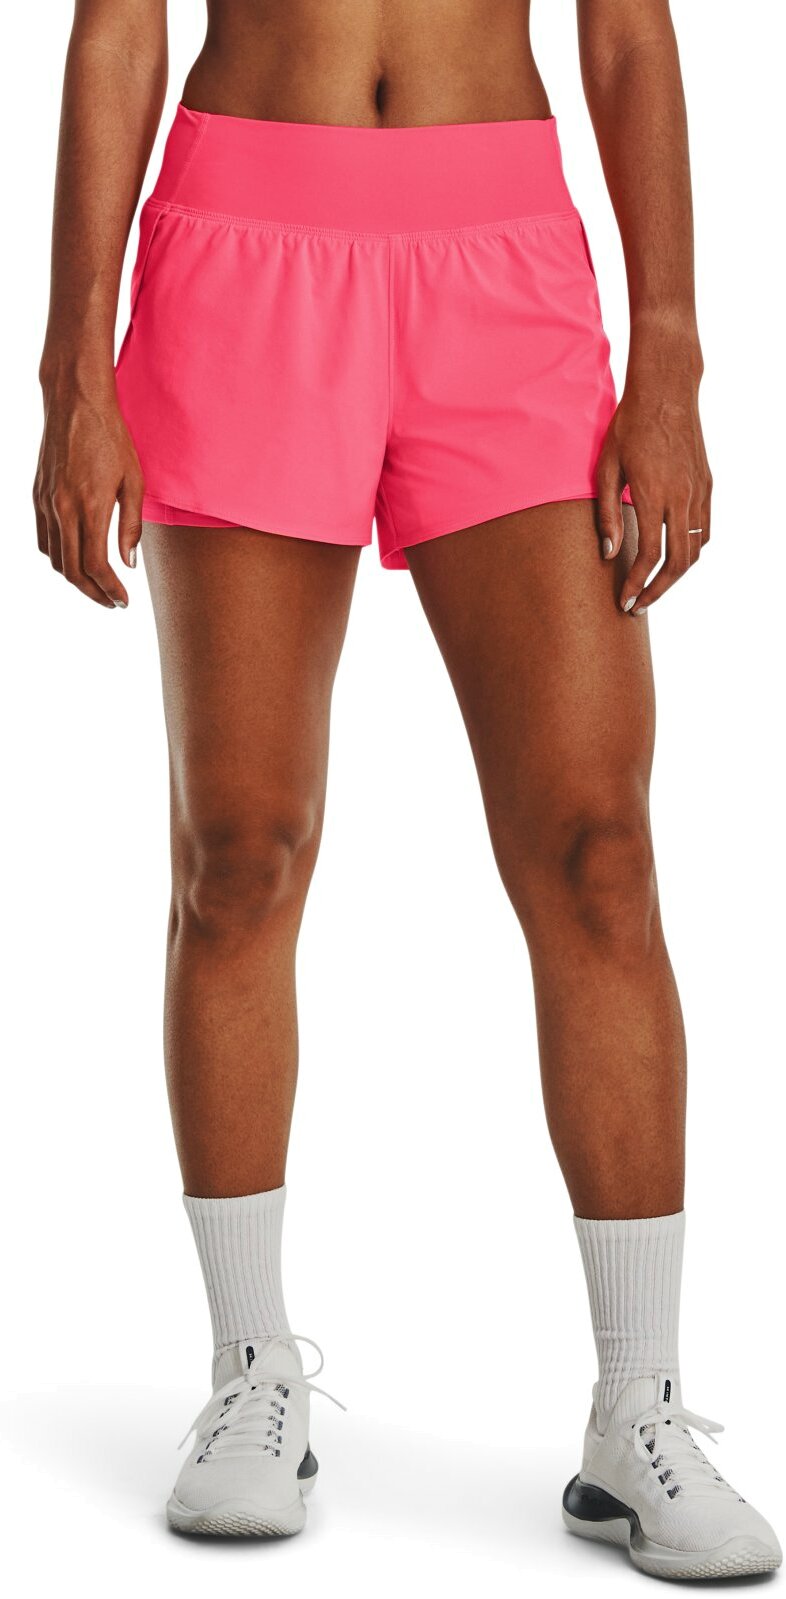 Cпортивные шорты женские Under Armour 1376936-683 розовые XS